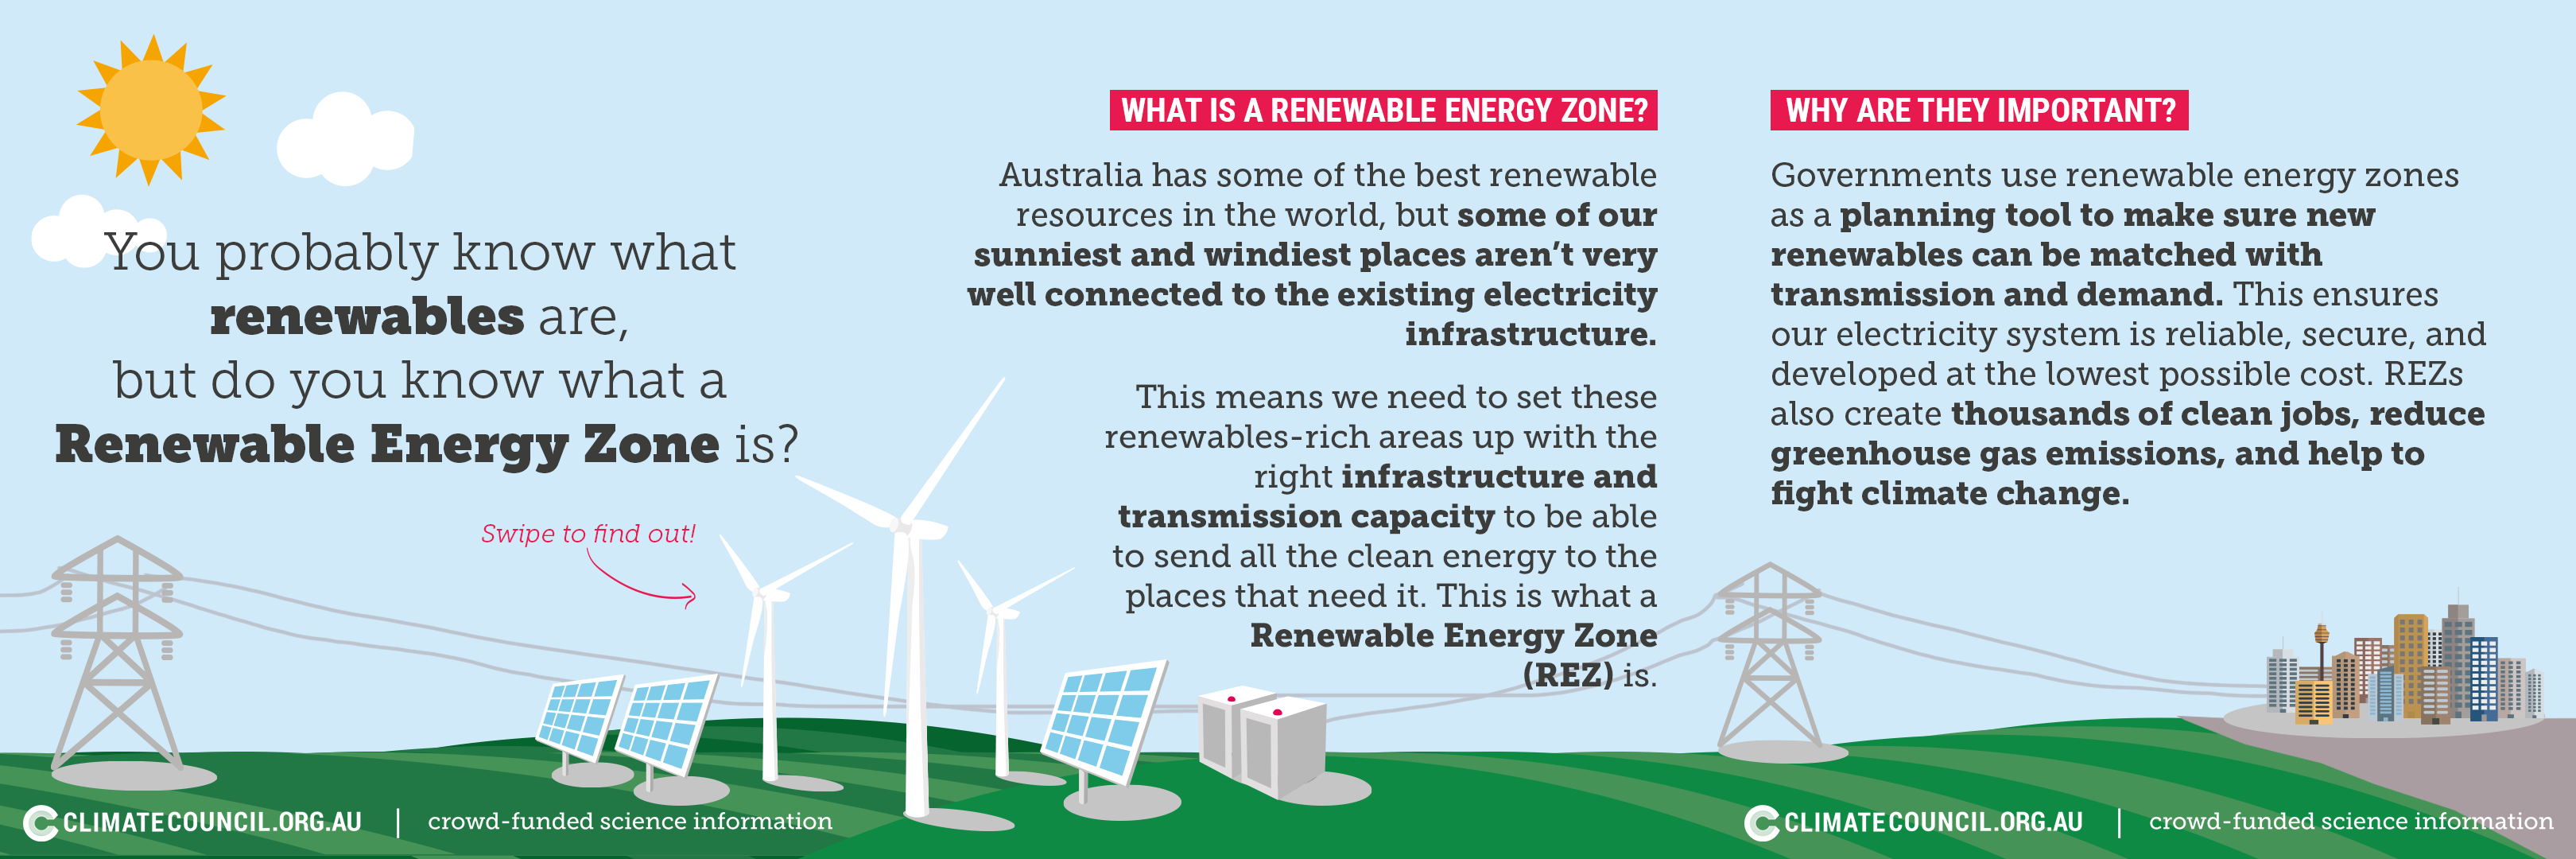 What are Renewable Energy Zones?